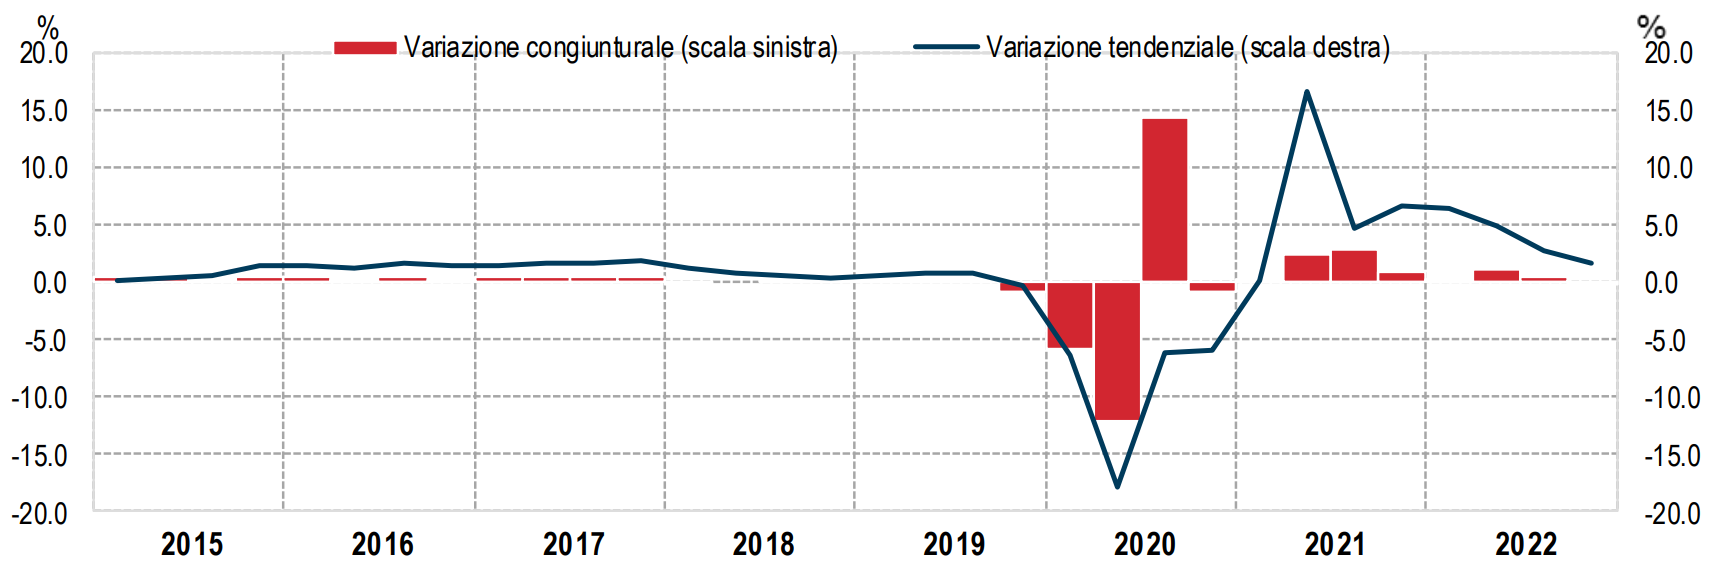 L'andamento del PIL italiano. Fonte: Istat